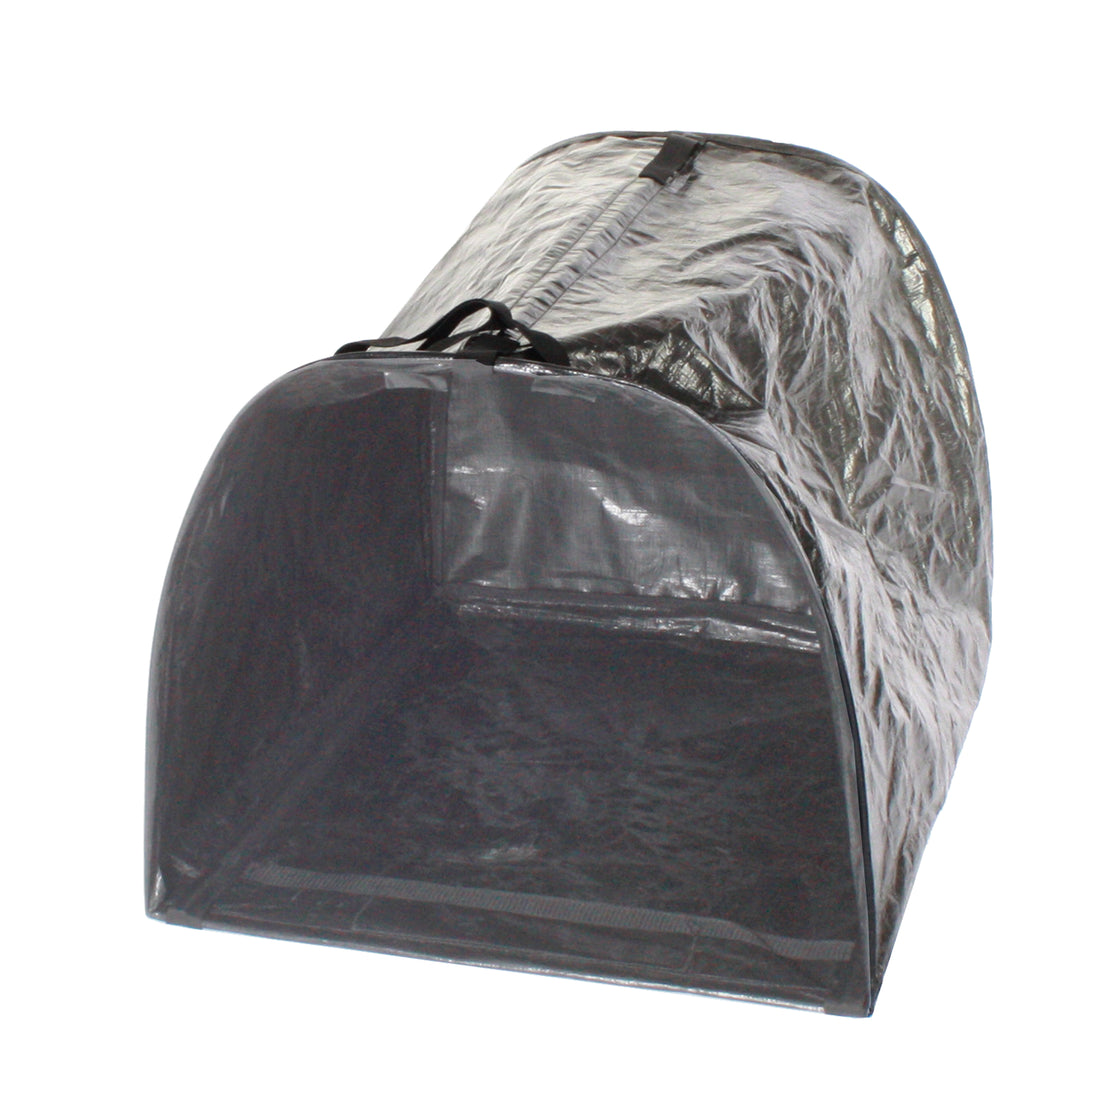 Leaf Toter™ Bag